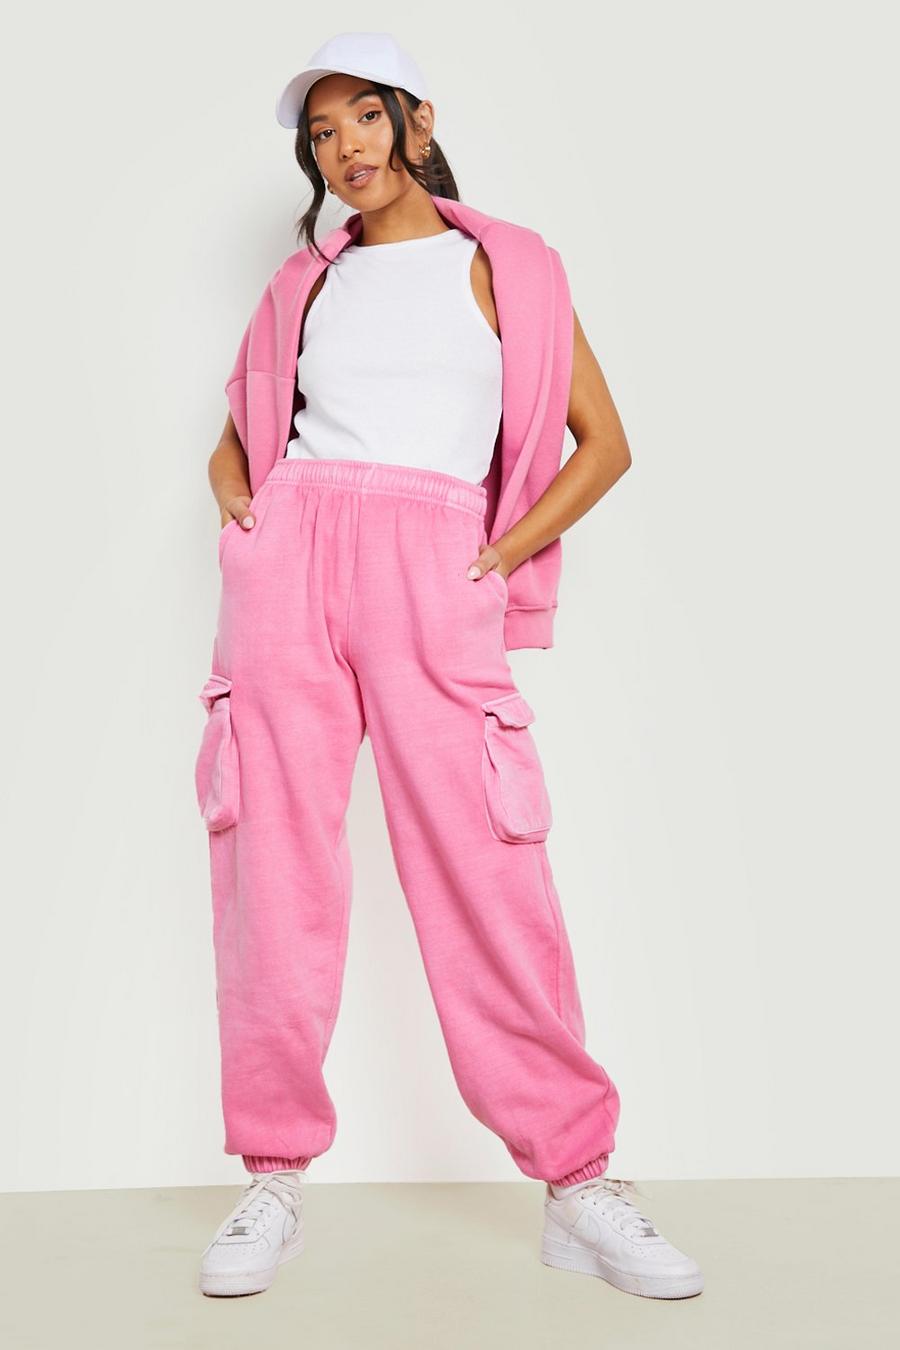 Pantalón deportivo Petite cargo con bolsillos, Hot pink rosa